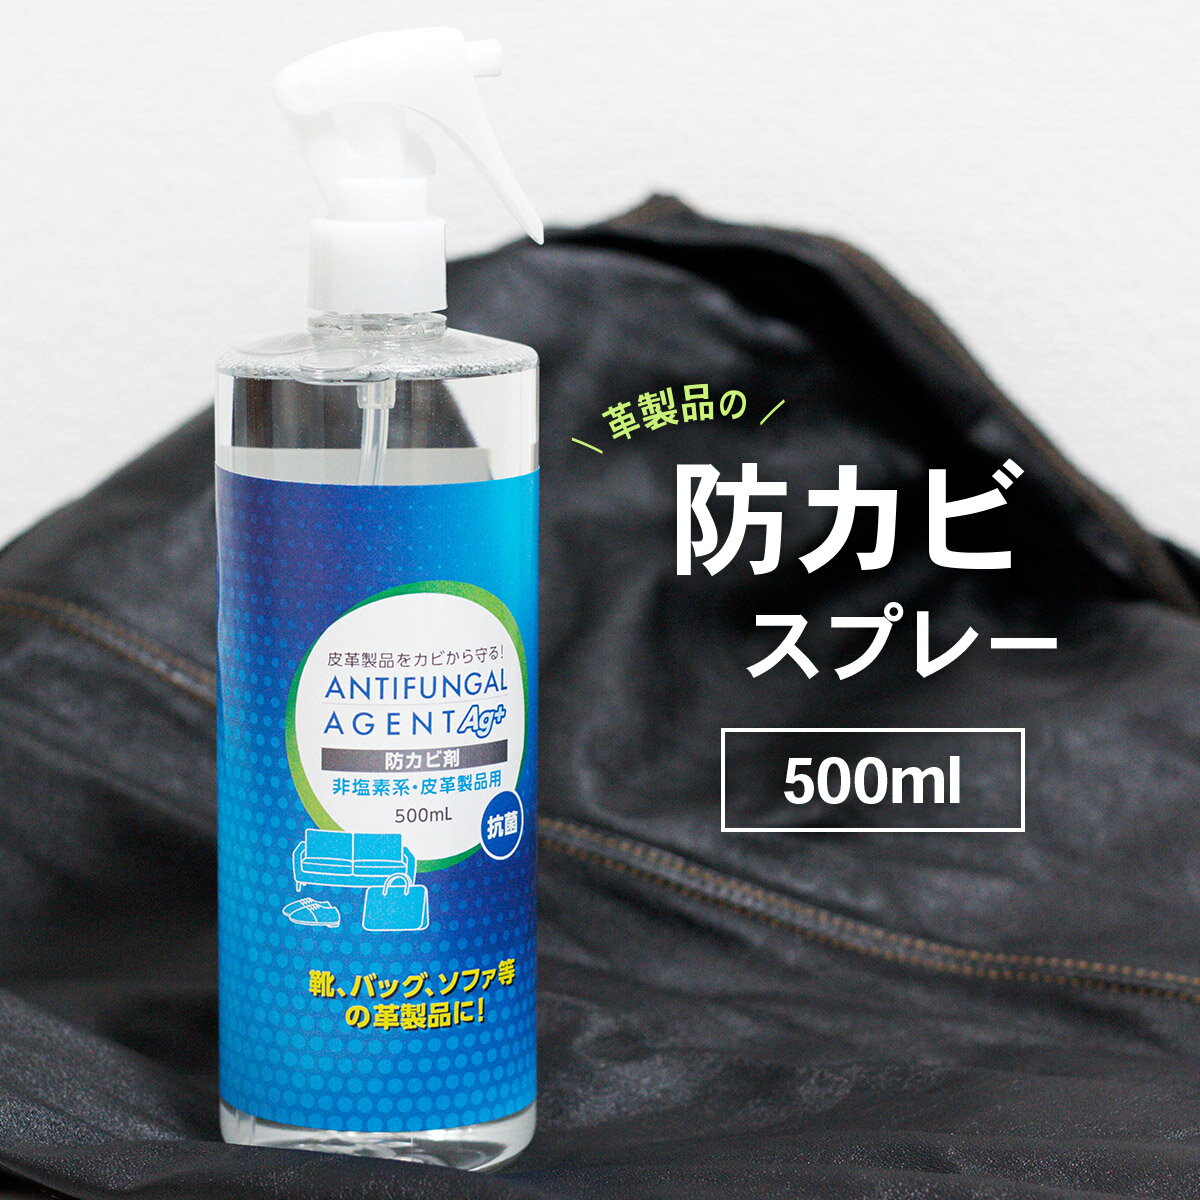 日本製 革製品 防カビスプレー 500ml レザー かび カビ カビ対策 予防 抗菌 非塩素系 銀イオン配合